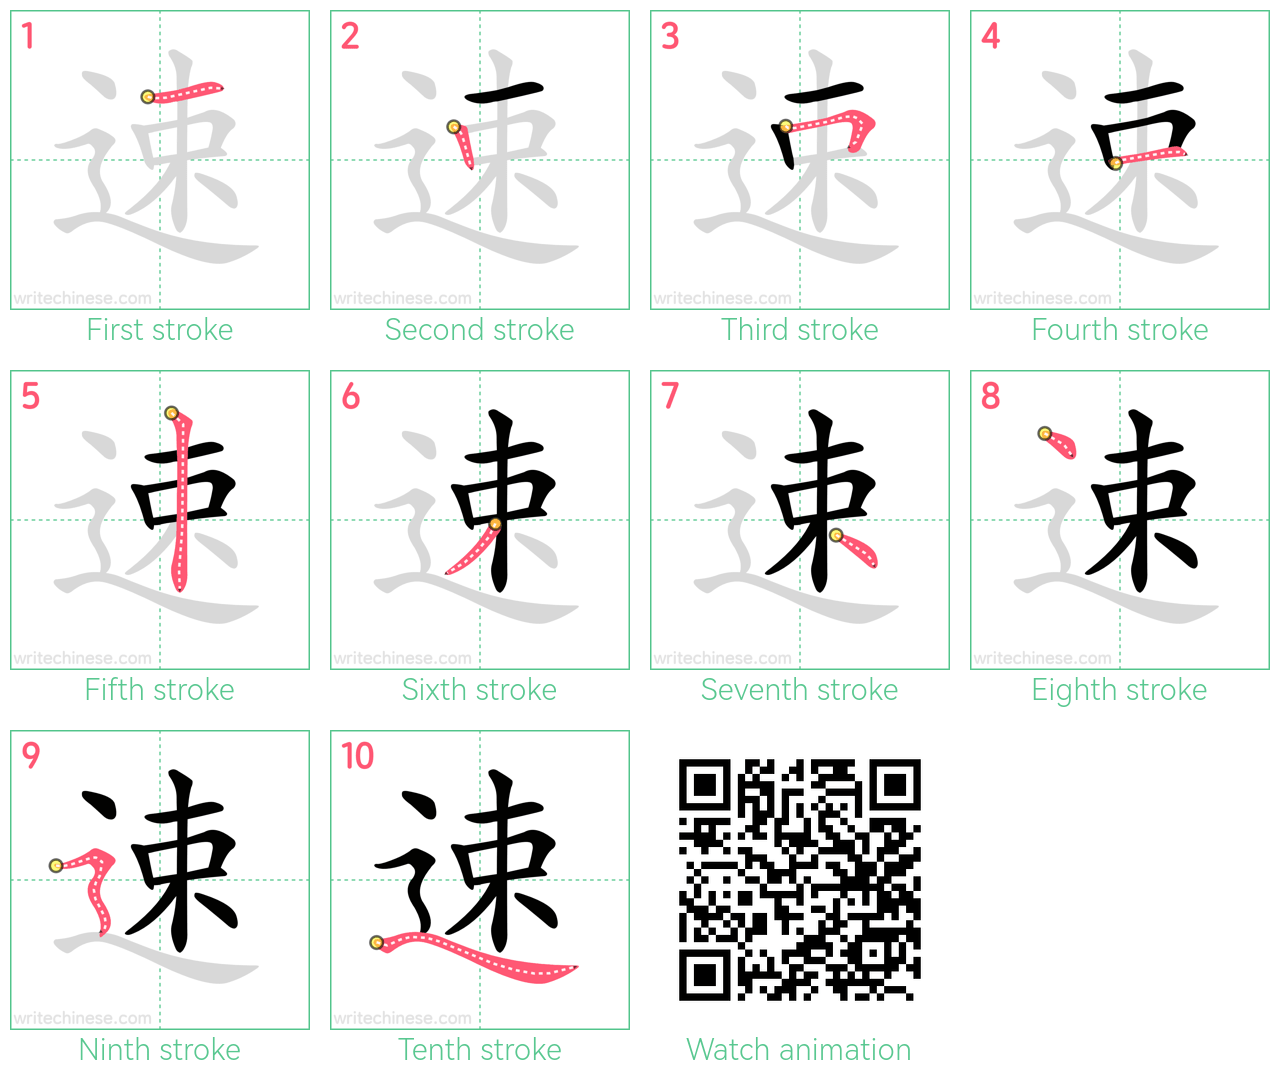 速 step-by-step stroke order diagrams